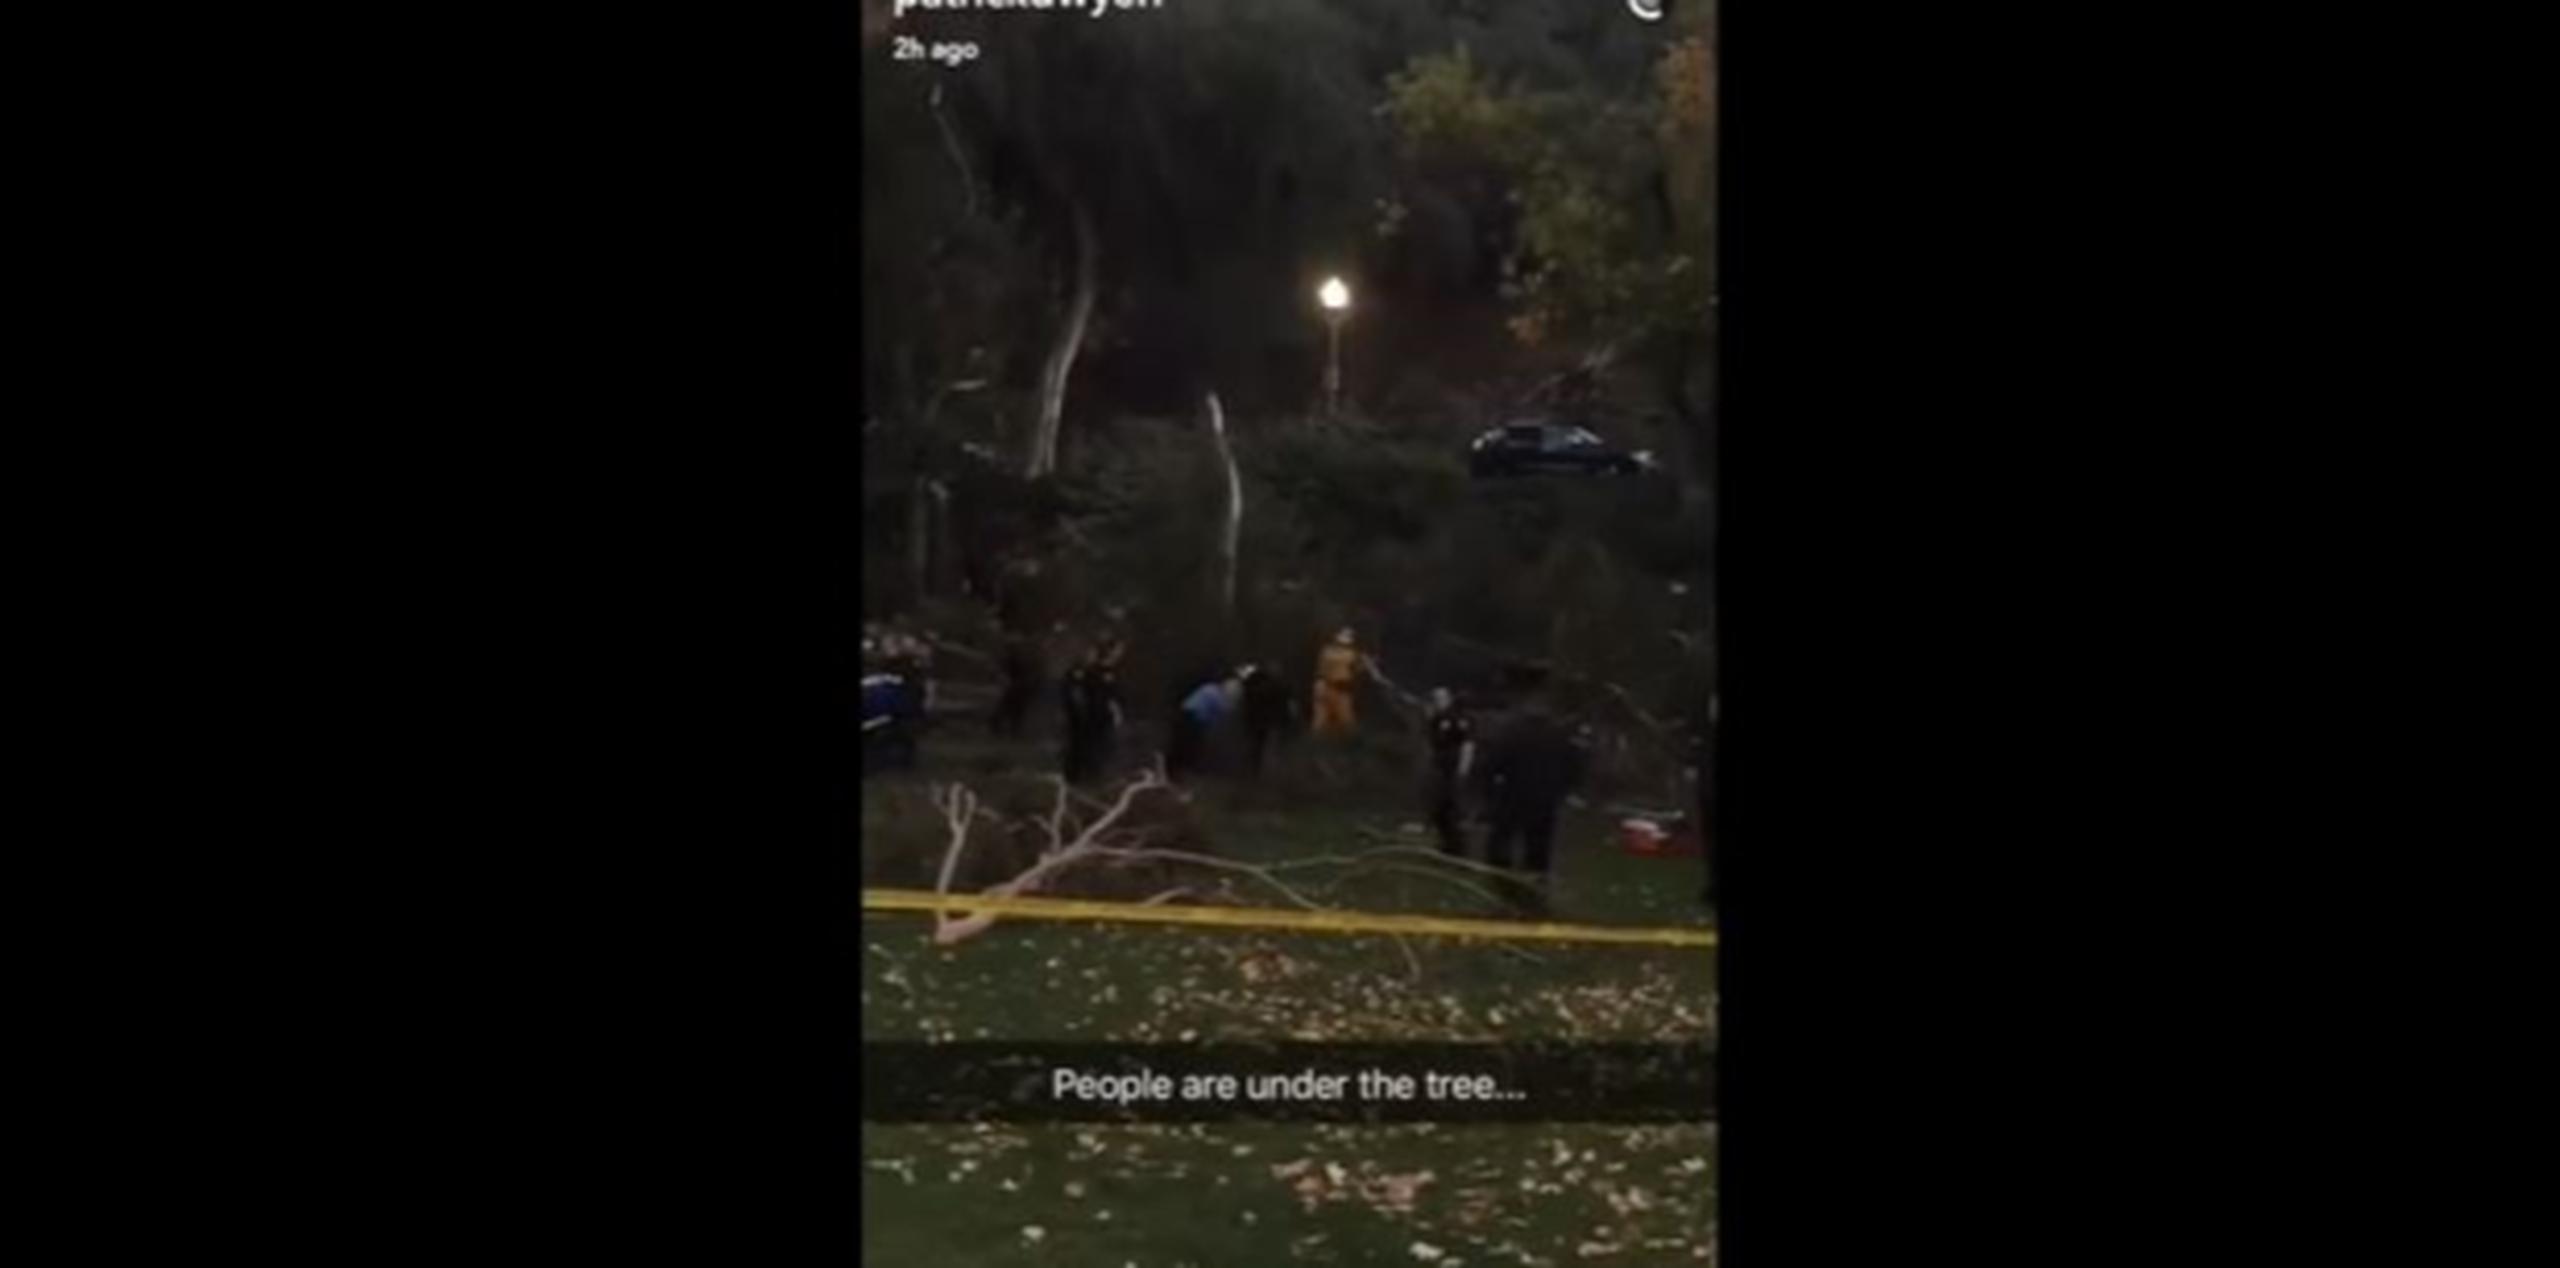 Varias personas quedaron atrapadas bajo el árbol en el Parque Penn de Whittier, informó el Departamento de Bomberos del condado Los Ángeles. (Captura)